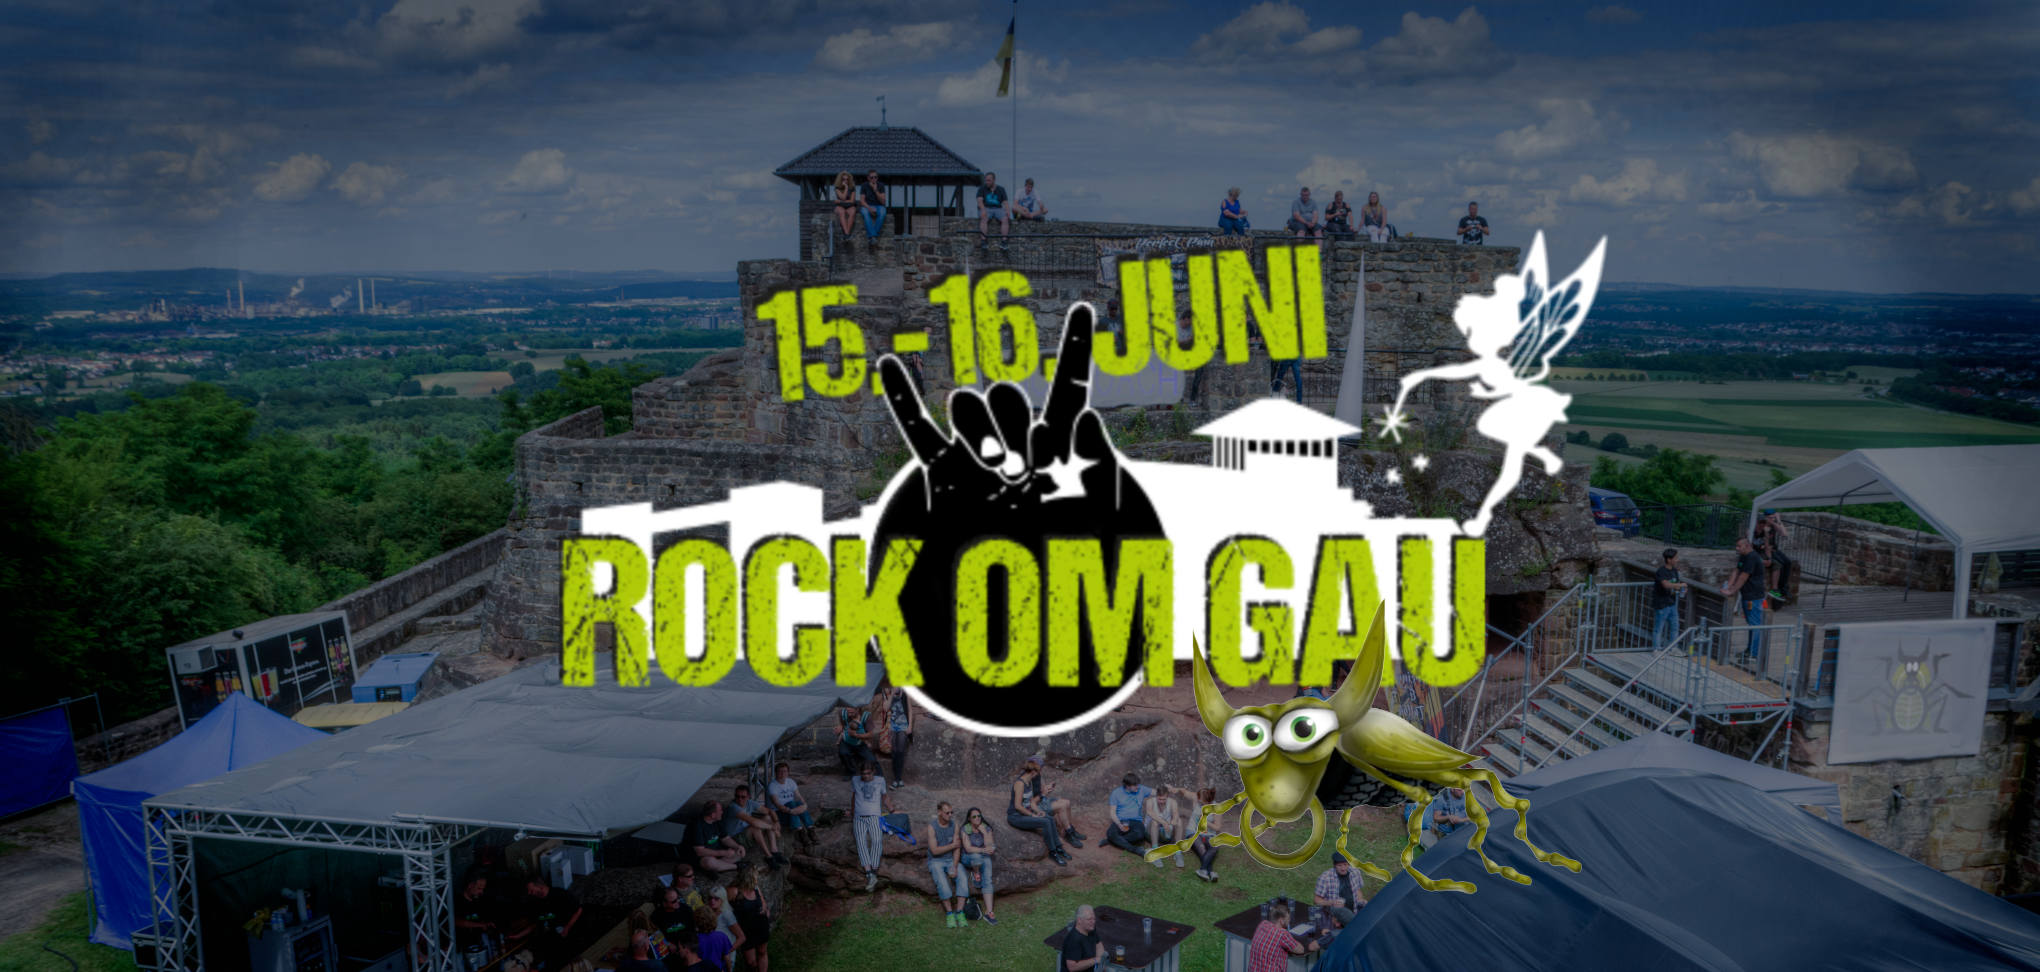 Festival Rock om Gau Mogroach Saarland